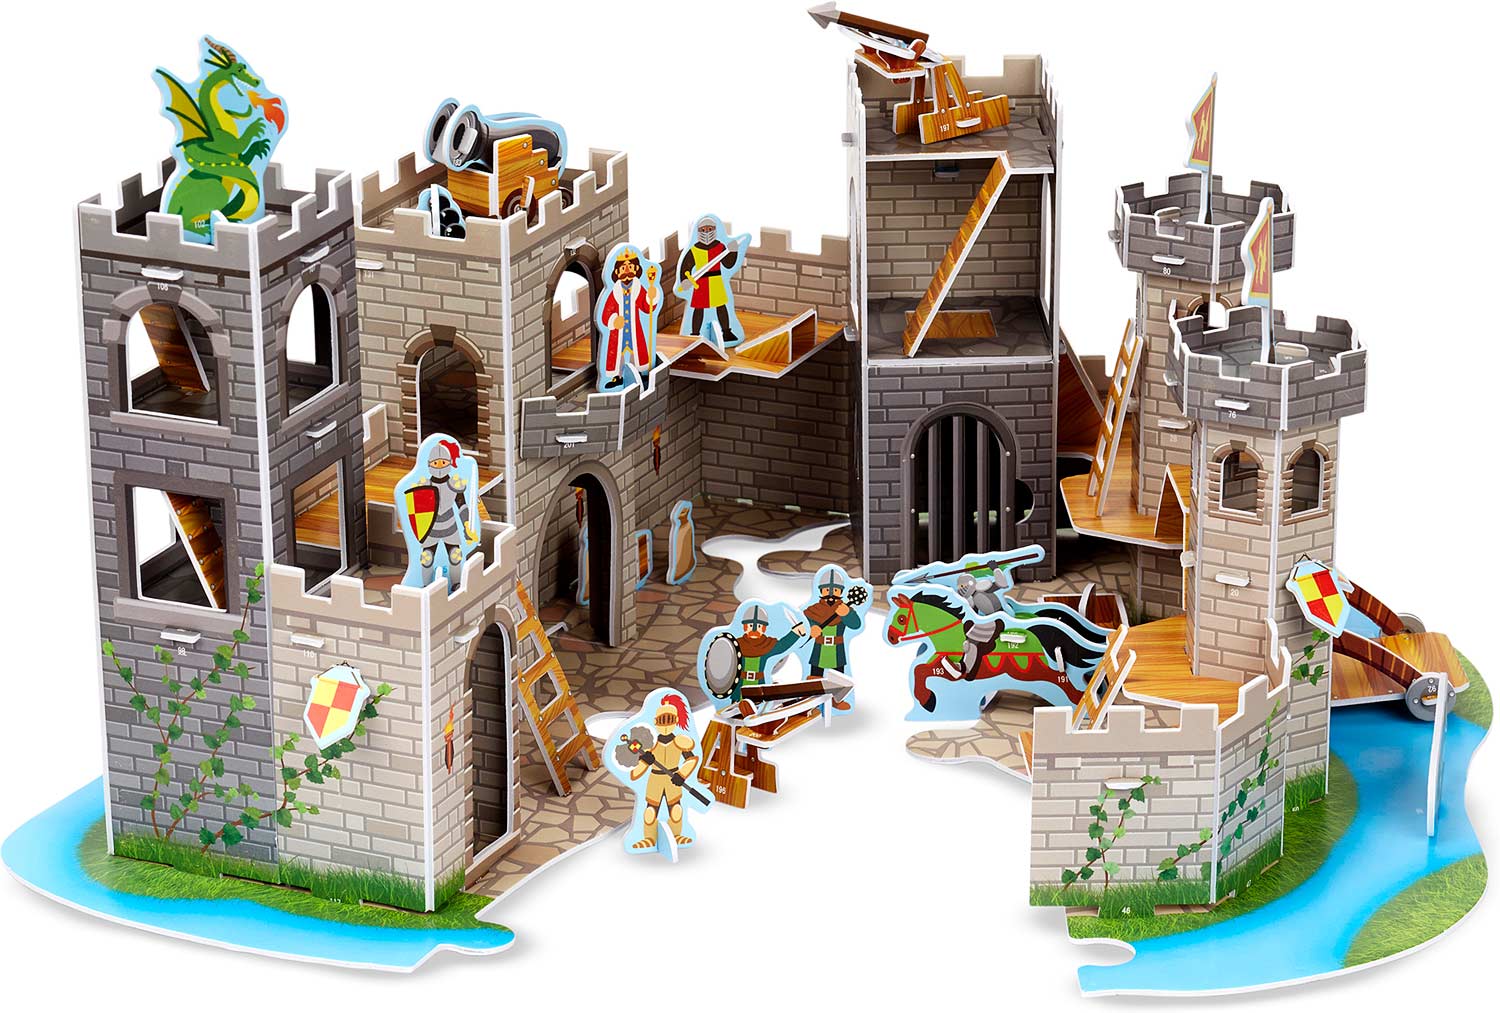 Medieval Castle 3D Puzzle - Toy Shop of Florence